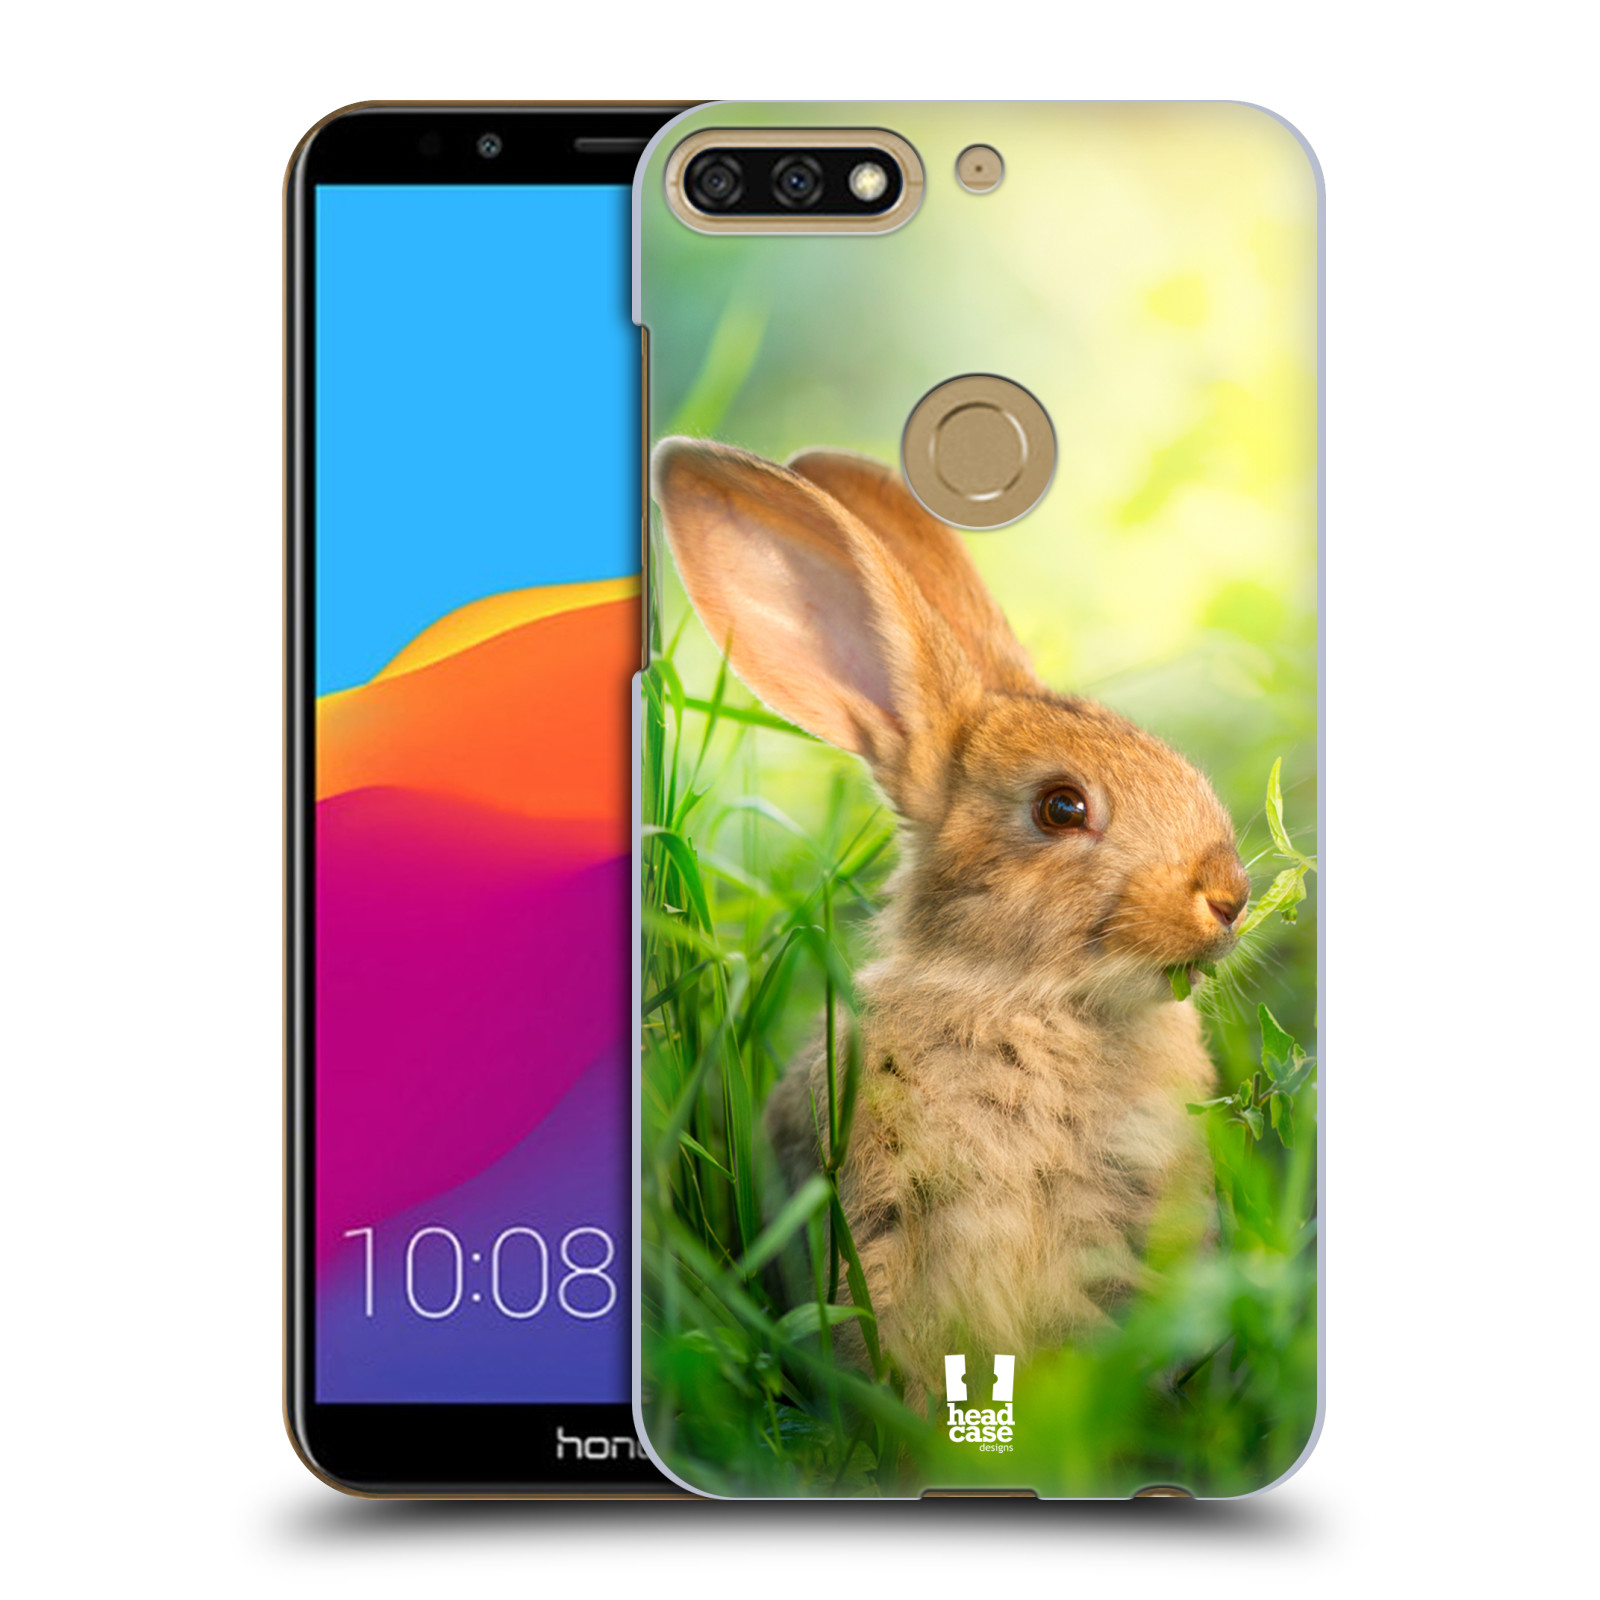 HEAD CASE plastový obal na mobil Honor 7c vzor Divočina, Divoký život a zvířata foto ZAJÍČEK V TRÁVĚ ZELENÁ